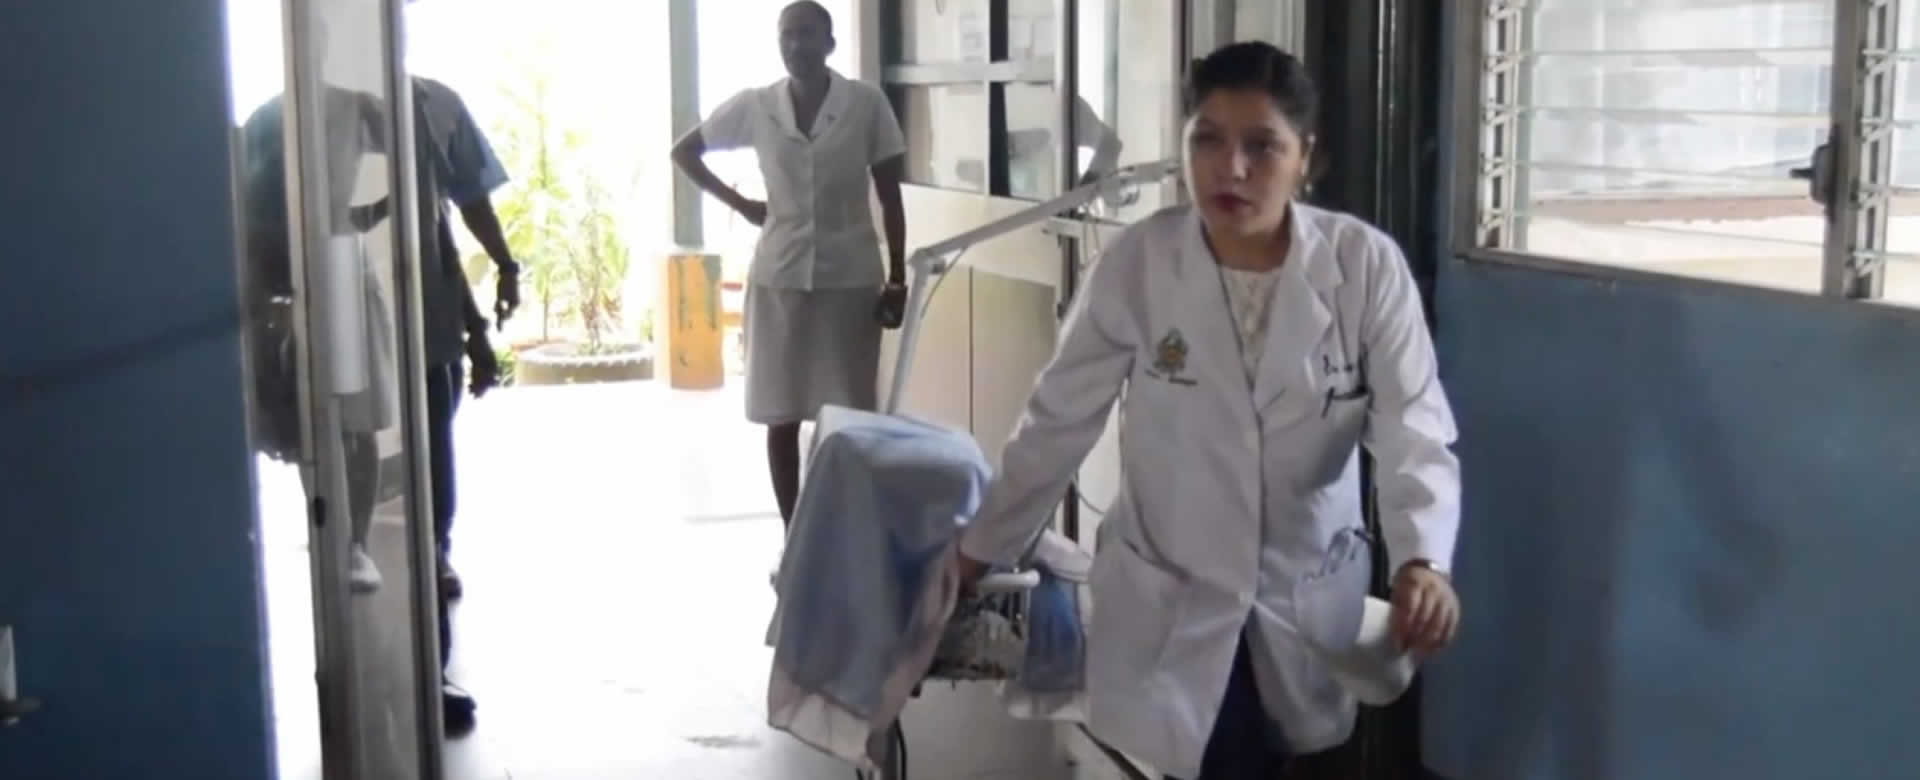 Bluefields recibe equipos médicos destinados al Hospital Regional "Ernesto Sequeira Blanco"